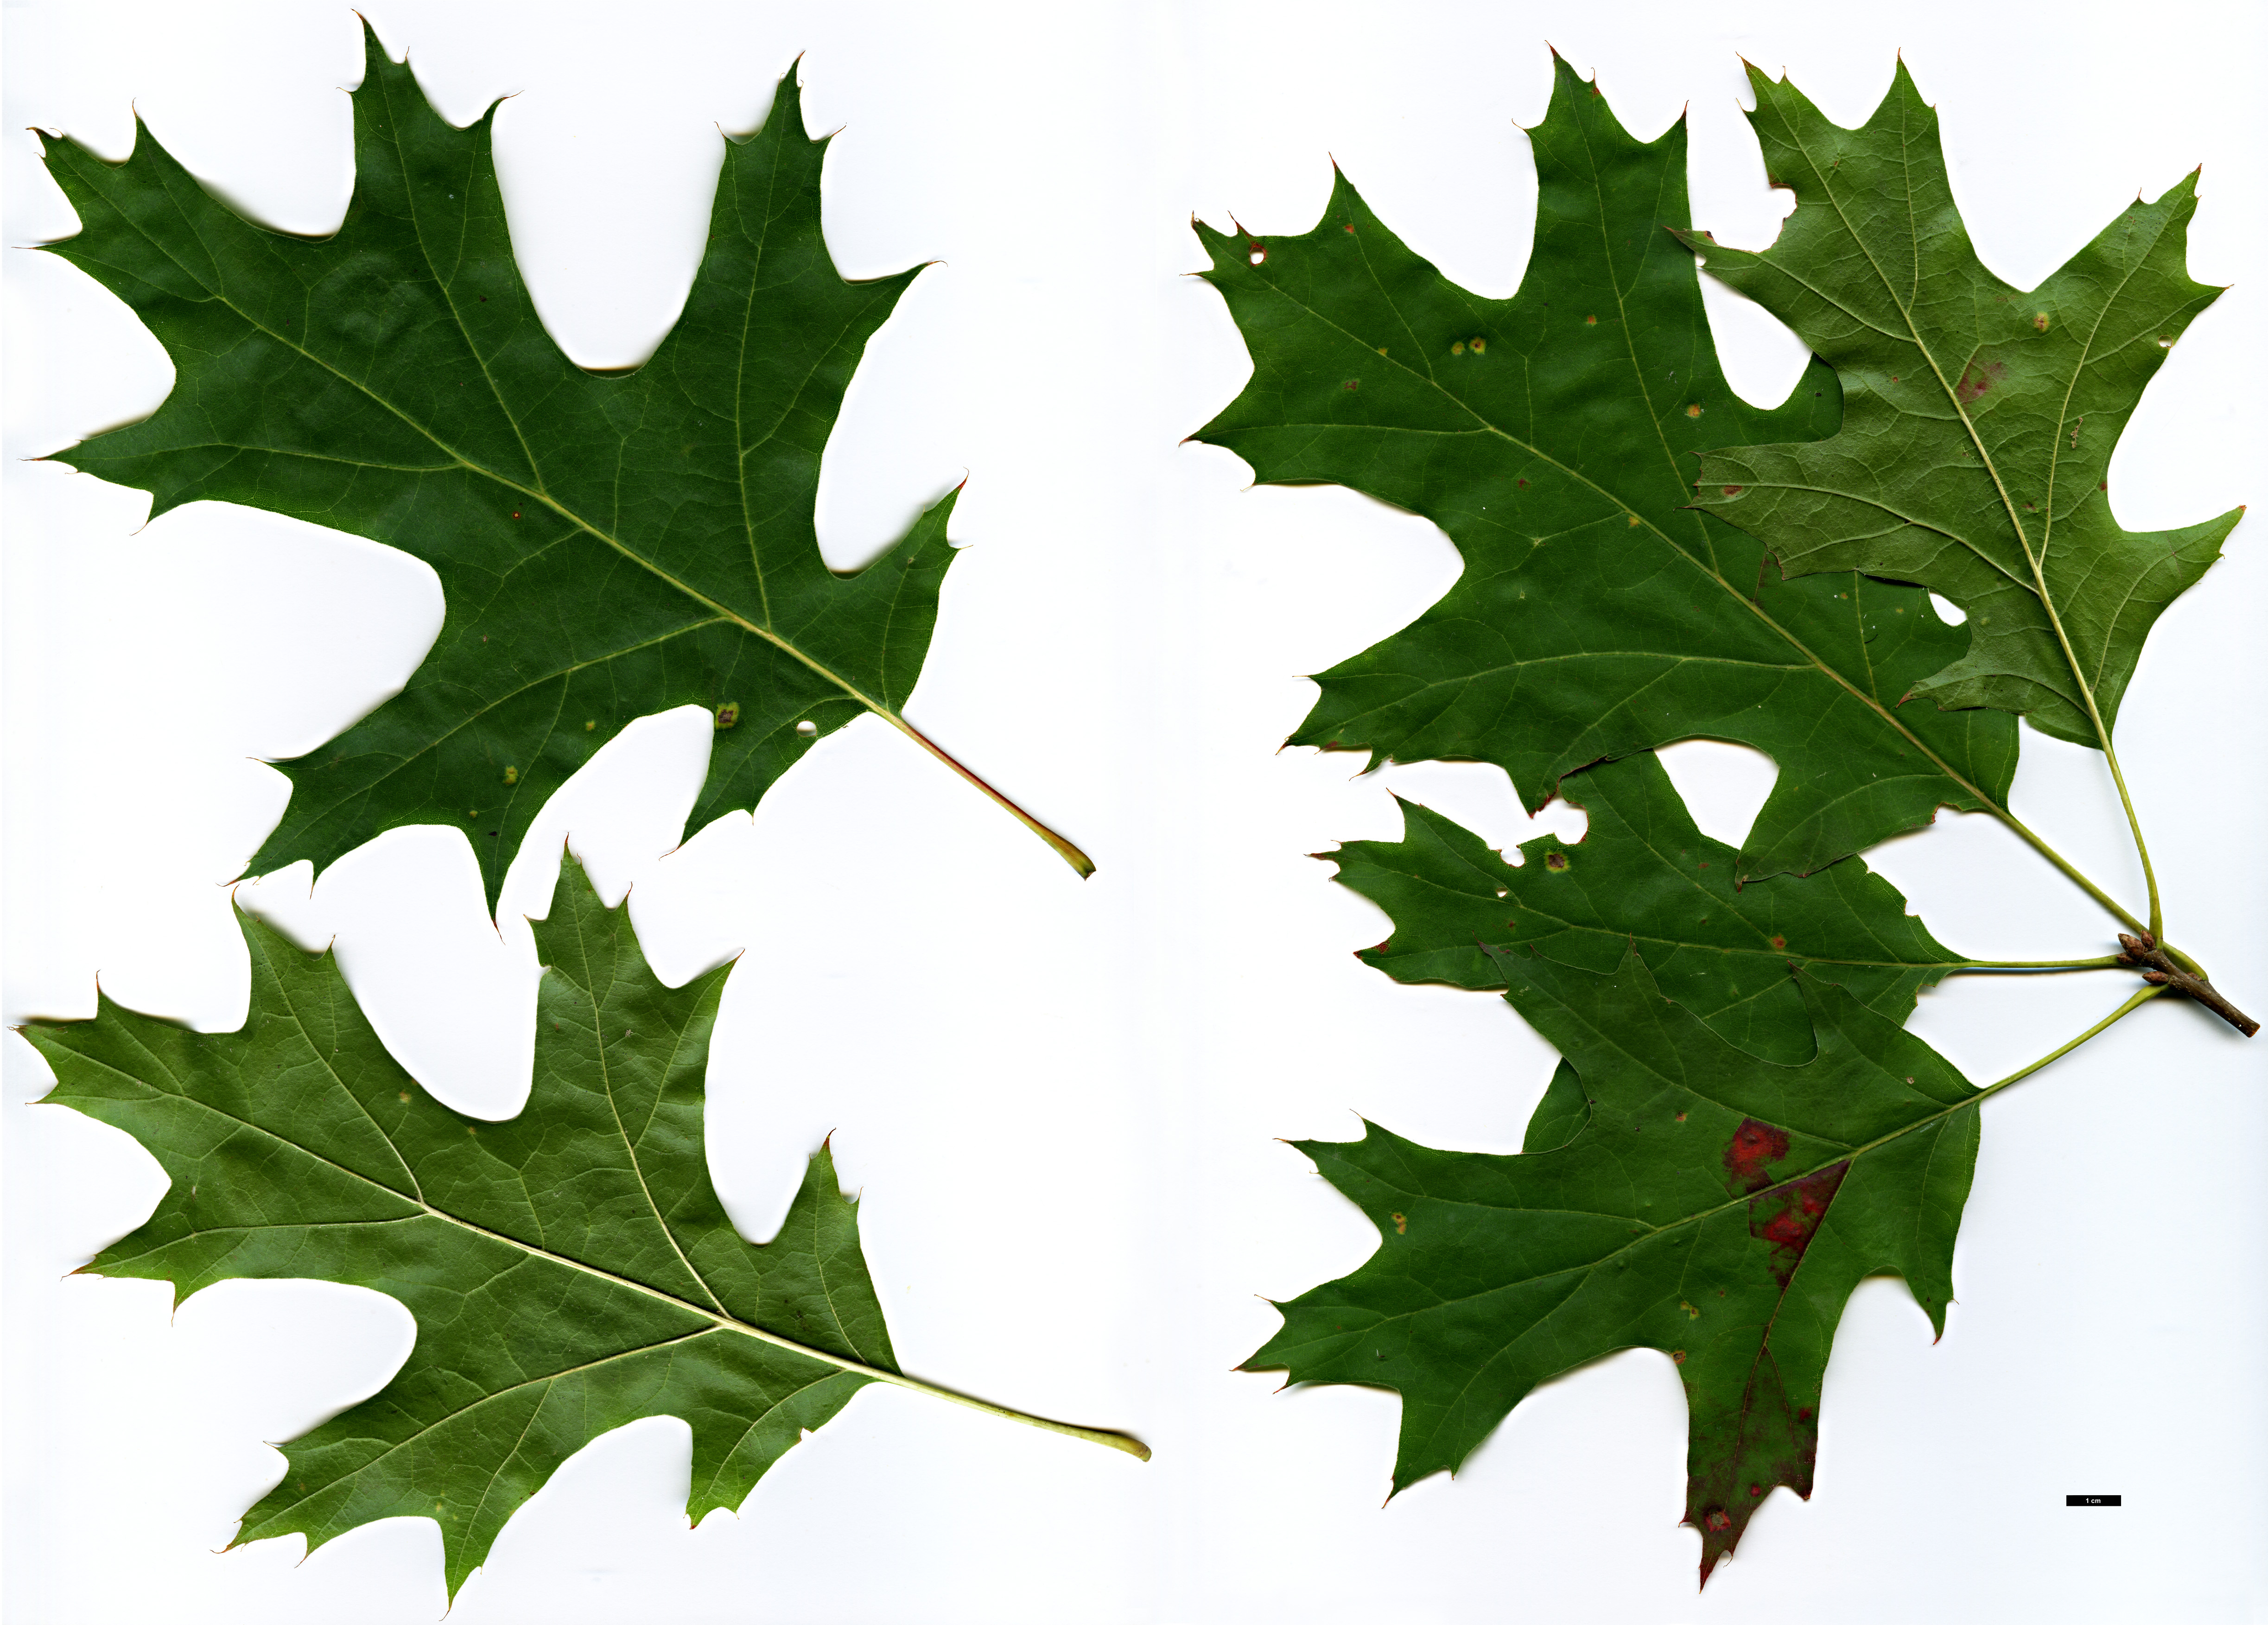 High resolution image: Family: Fagaceae - Genus: Quercus - Taxon: ×benderi (Q.coccinea × Q.rubra)